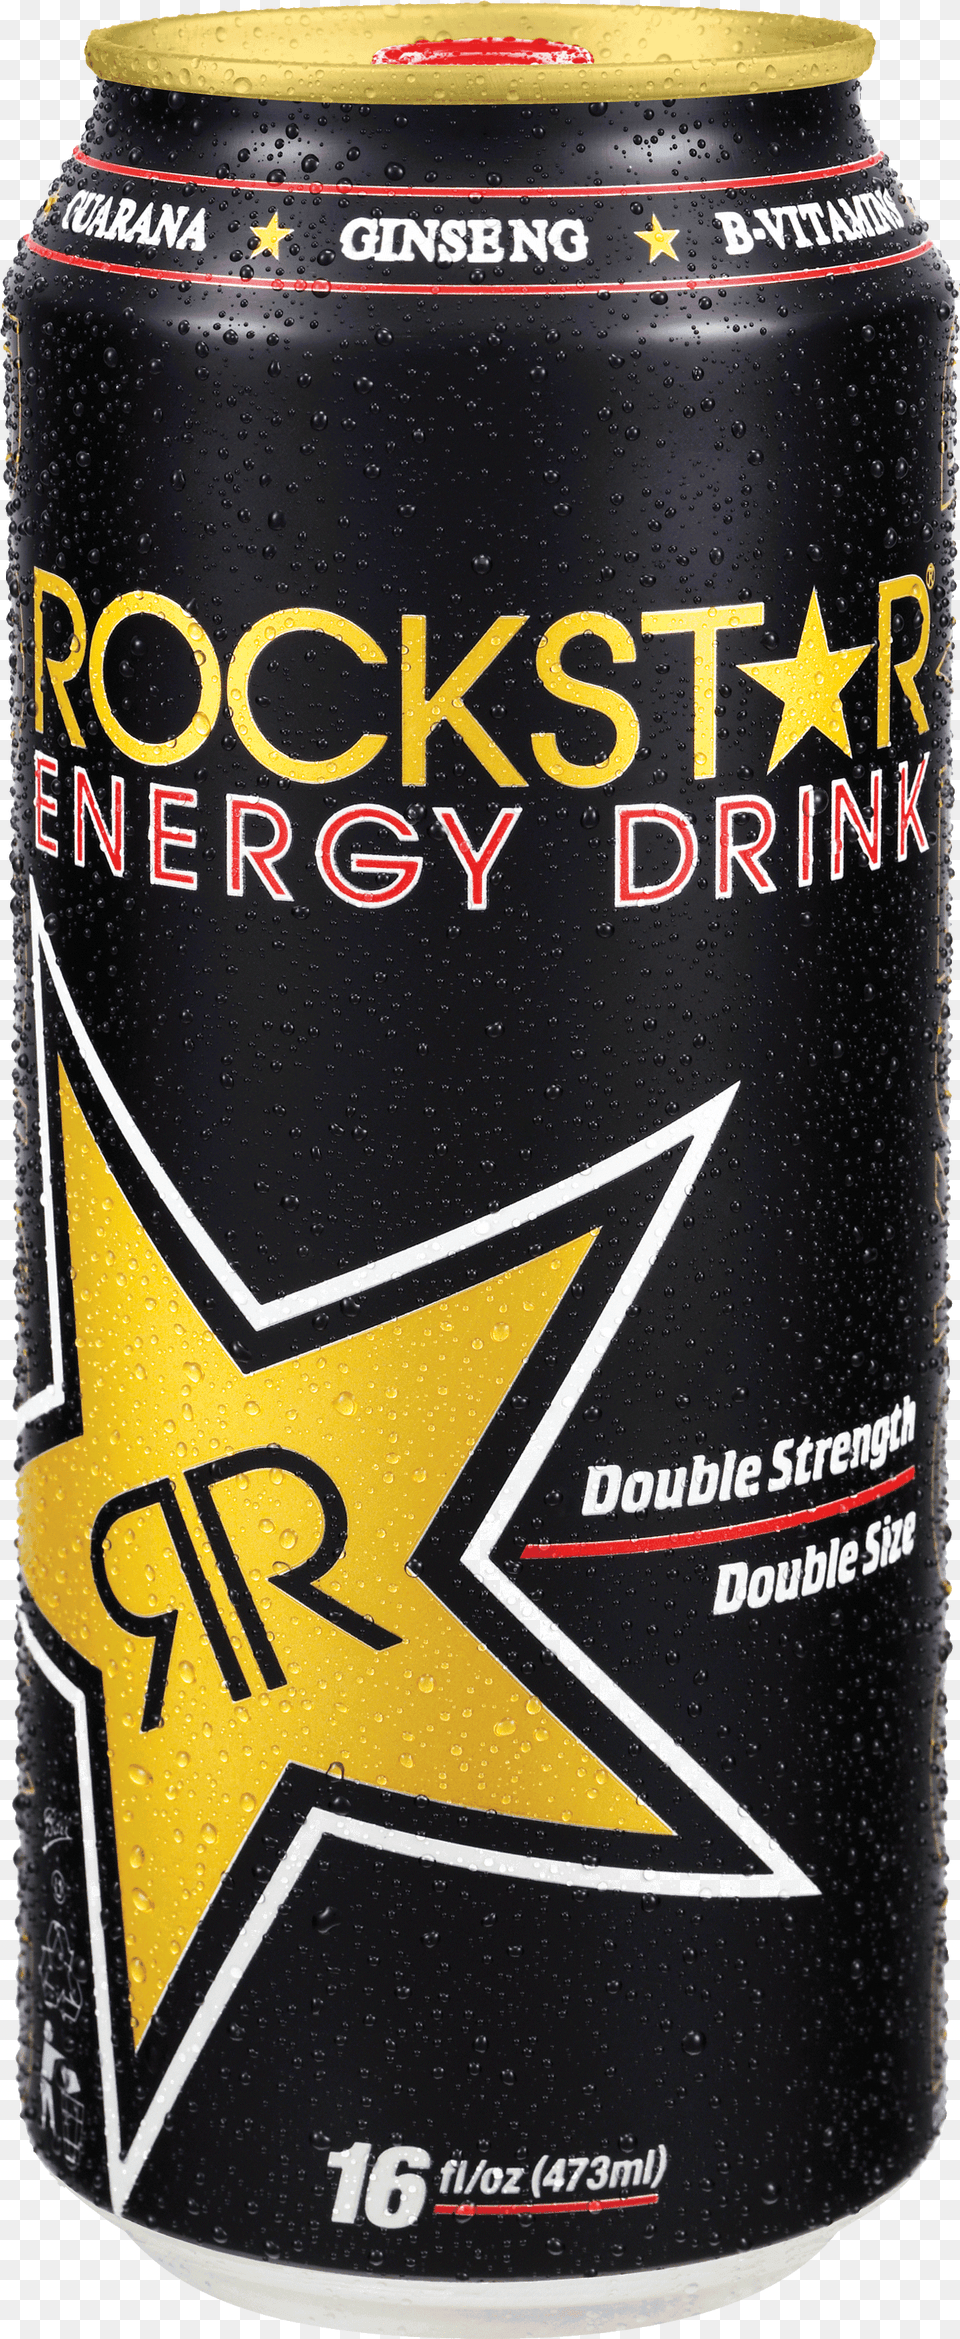 Rockstar Original Rockstar 16 Oz, Alcohol, Beer, Beverage, Lager Free Transparent Png